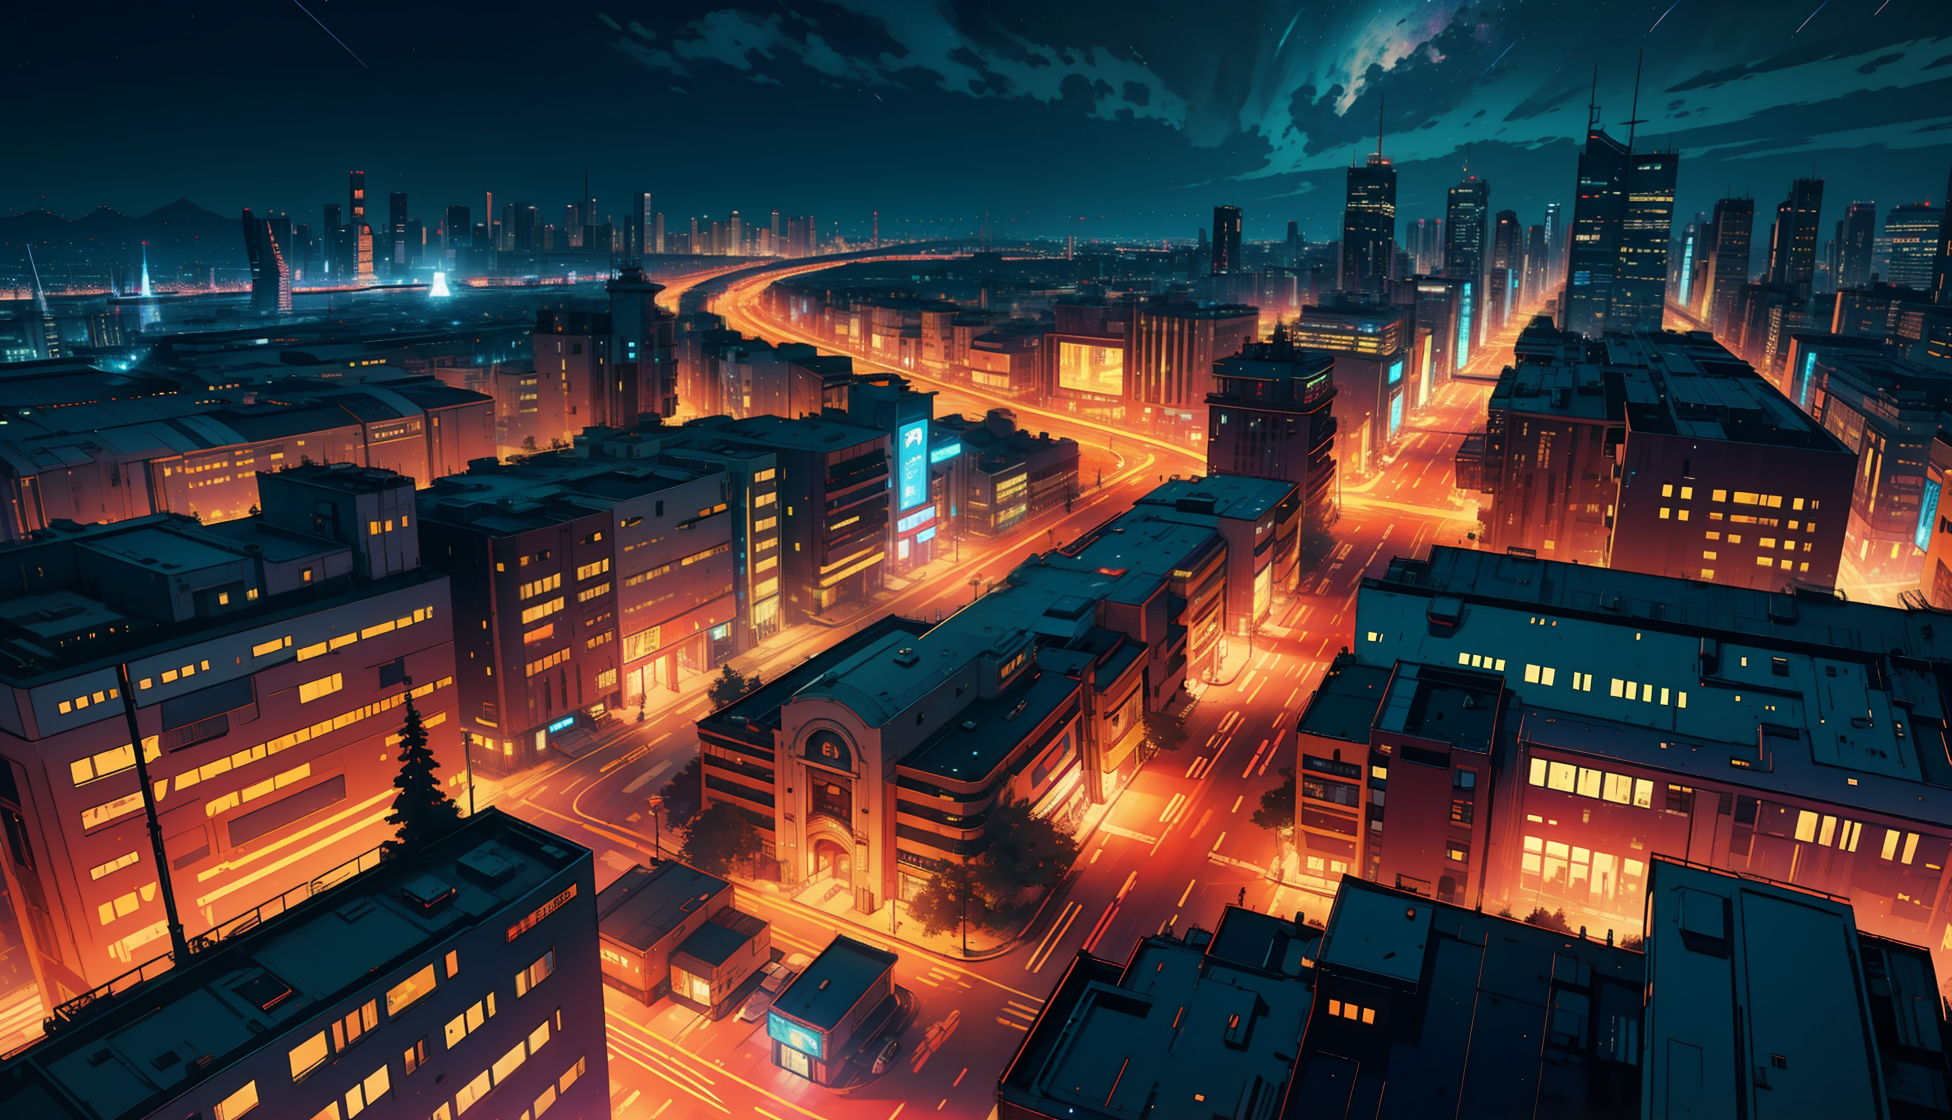 Anime Cityscapes. | City art, Cảnh quan thành phố, Nghệ thuật đưa ra khái  niệm